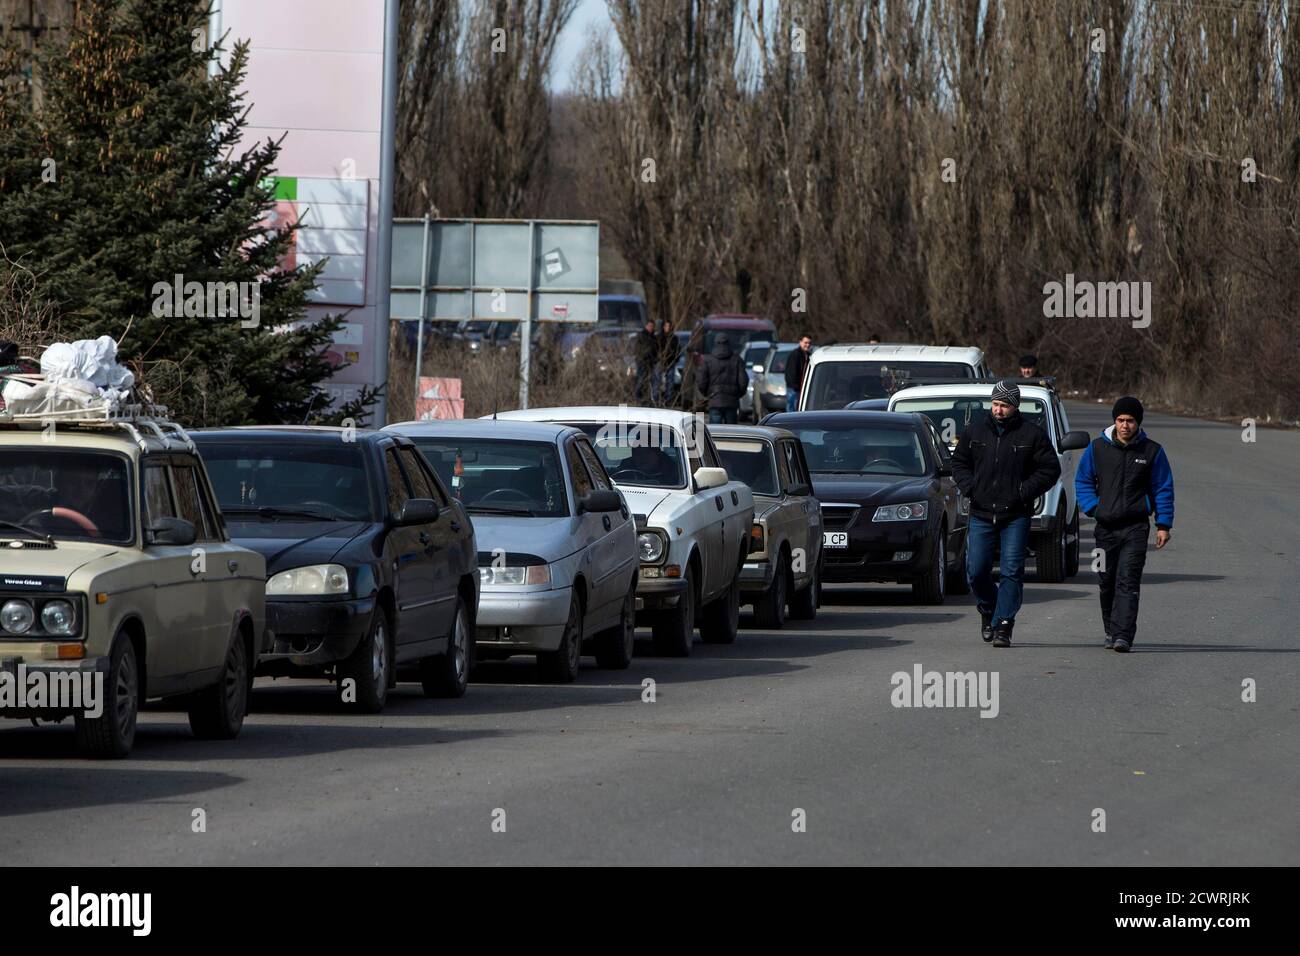 Gli uomini camminano oltre una fila di auto in attesa di attraversare il confine Uspenka tra Ucraina e Russia, a sud-est da Donetsk, 15 marzo 2015. REUTERS/Marko Djurica (UCRAINA - Tags: POLITICA CIVILE SCATENARE IL TRASPORTO DEI CONFLITTI) Foto Stock